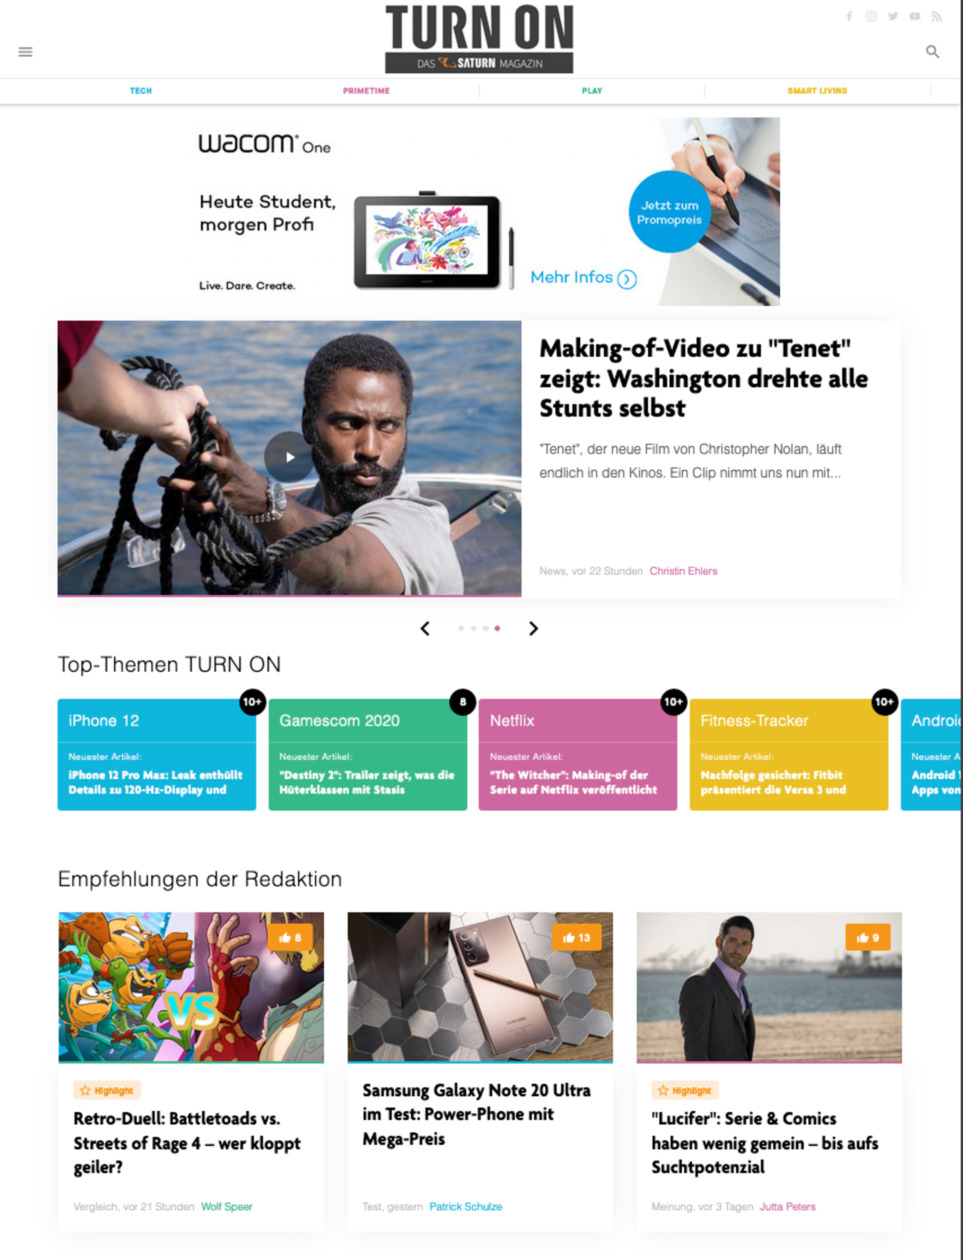 TURN ON, das Technik-Magazin von SATURN, wird von Content Fleet konzepiert und produziert